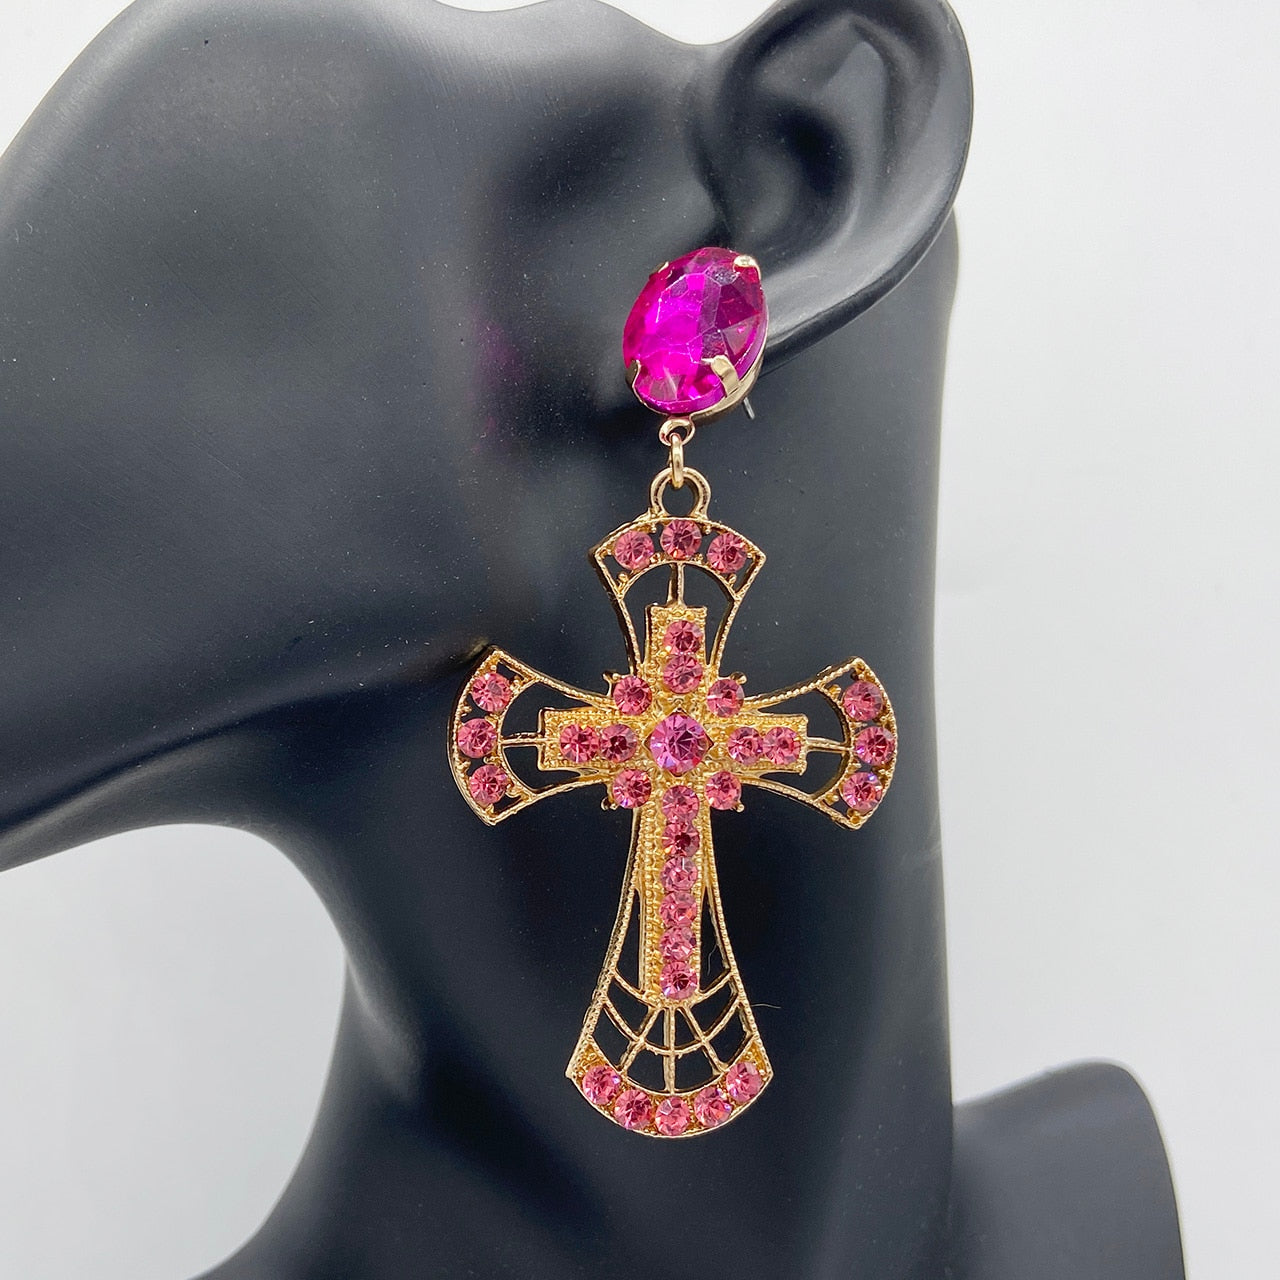 Newest Fashion Cross Pendant Drop Dangle Earrings